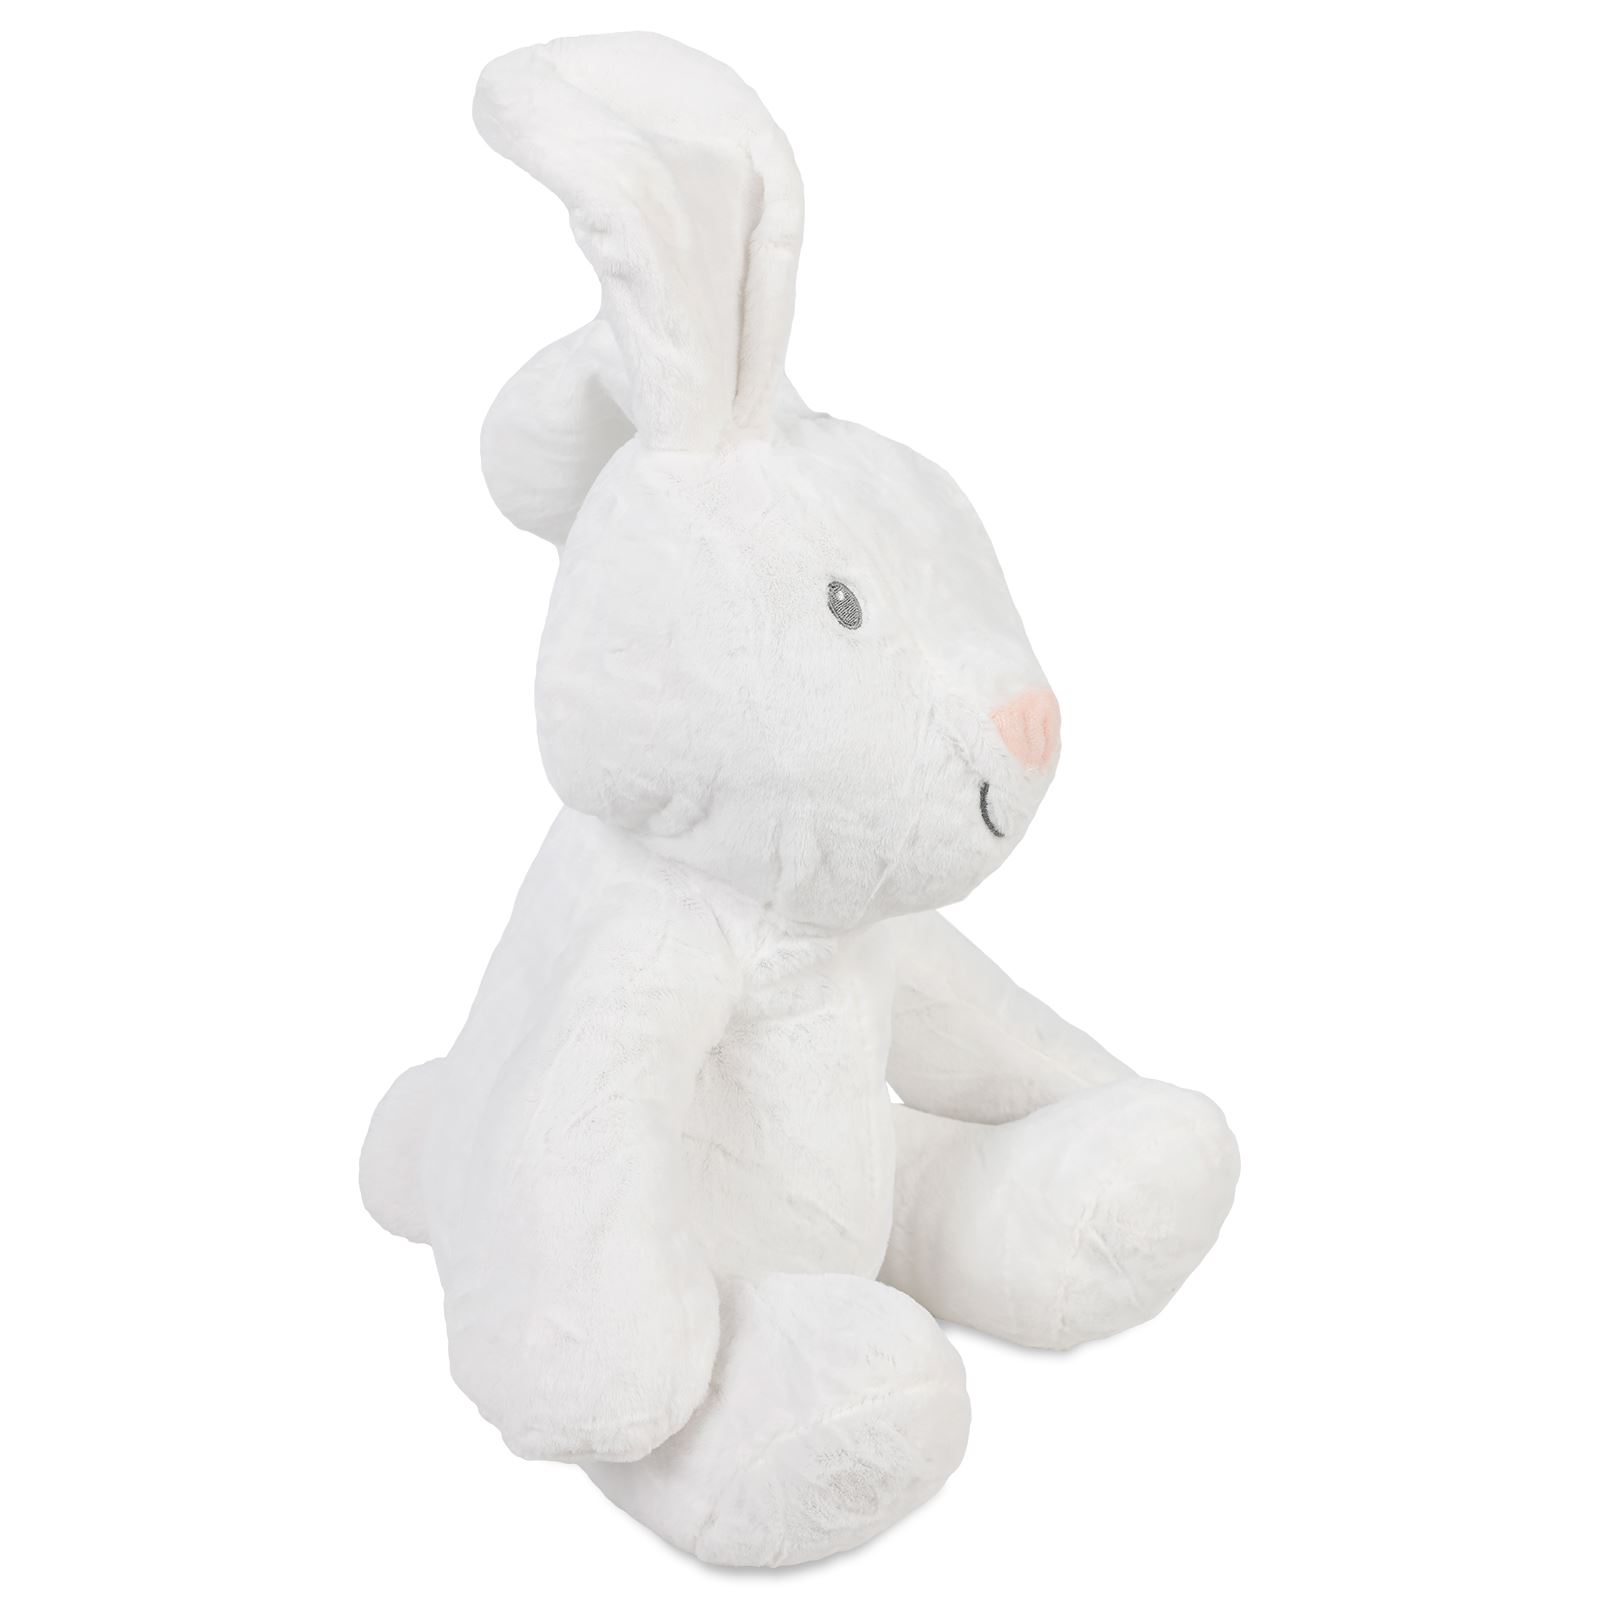 Halley Oyuncak Peluş Tavşan 35 Cm Beyaz